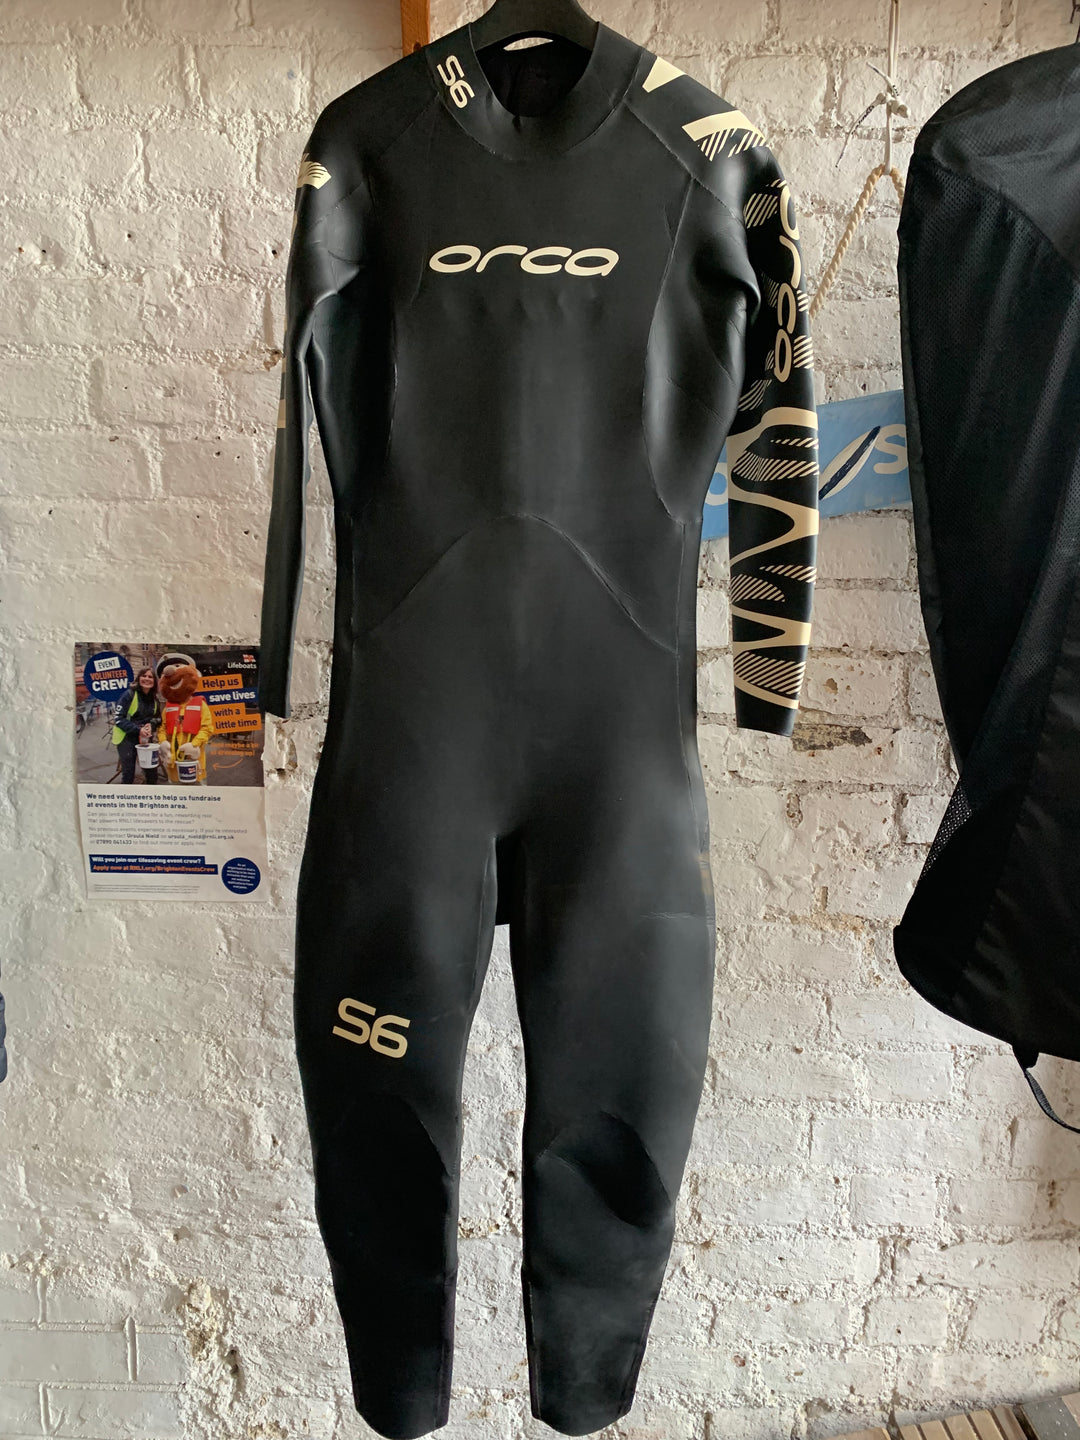 Orca S6 Men’s wetsuit - size 9 - Zip needs replacing - Good Condition